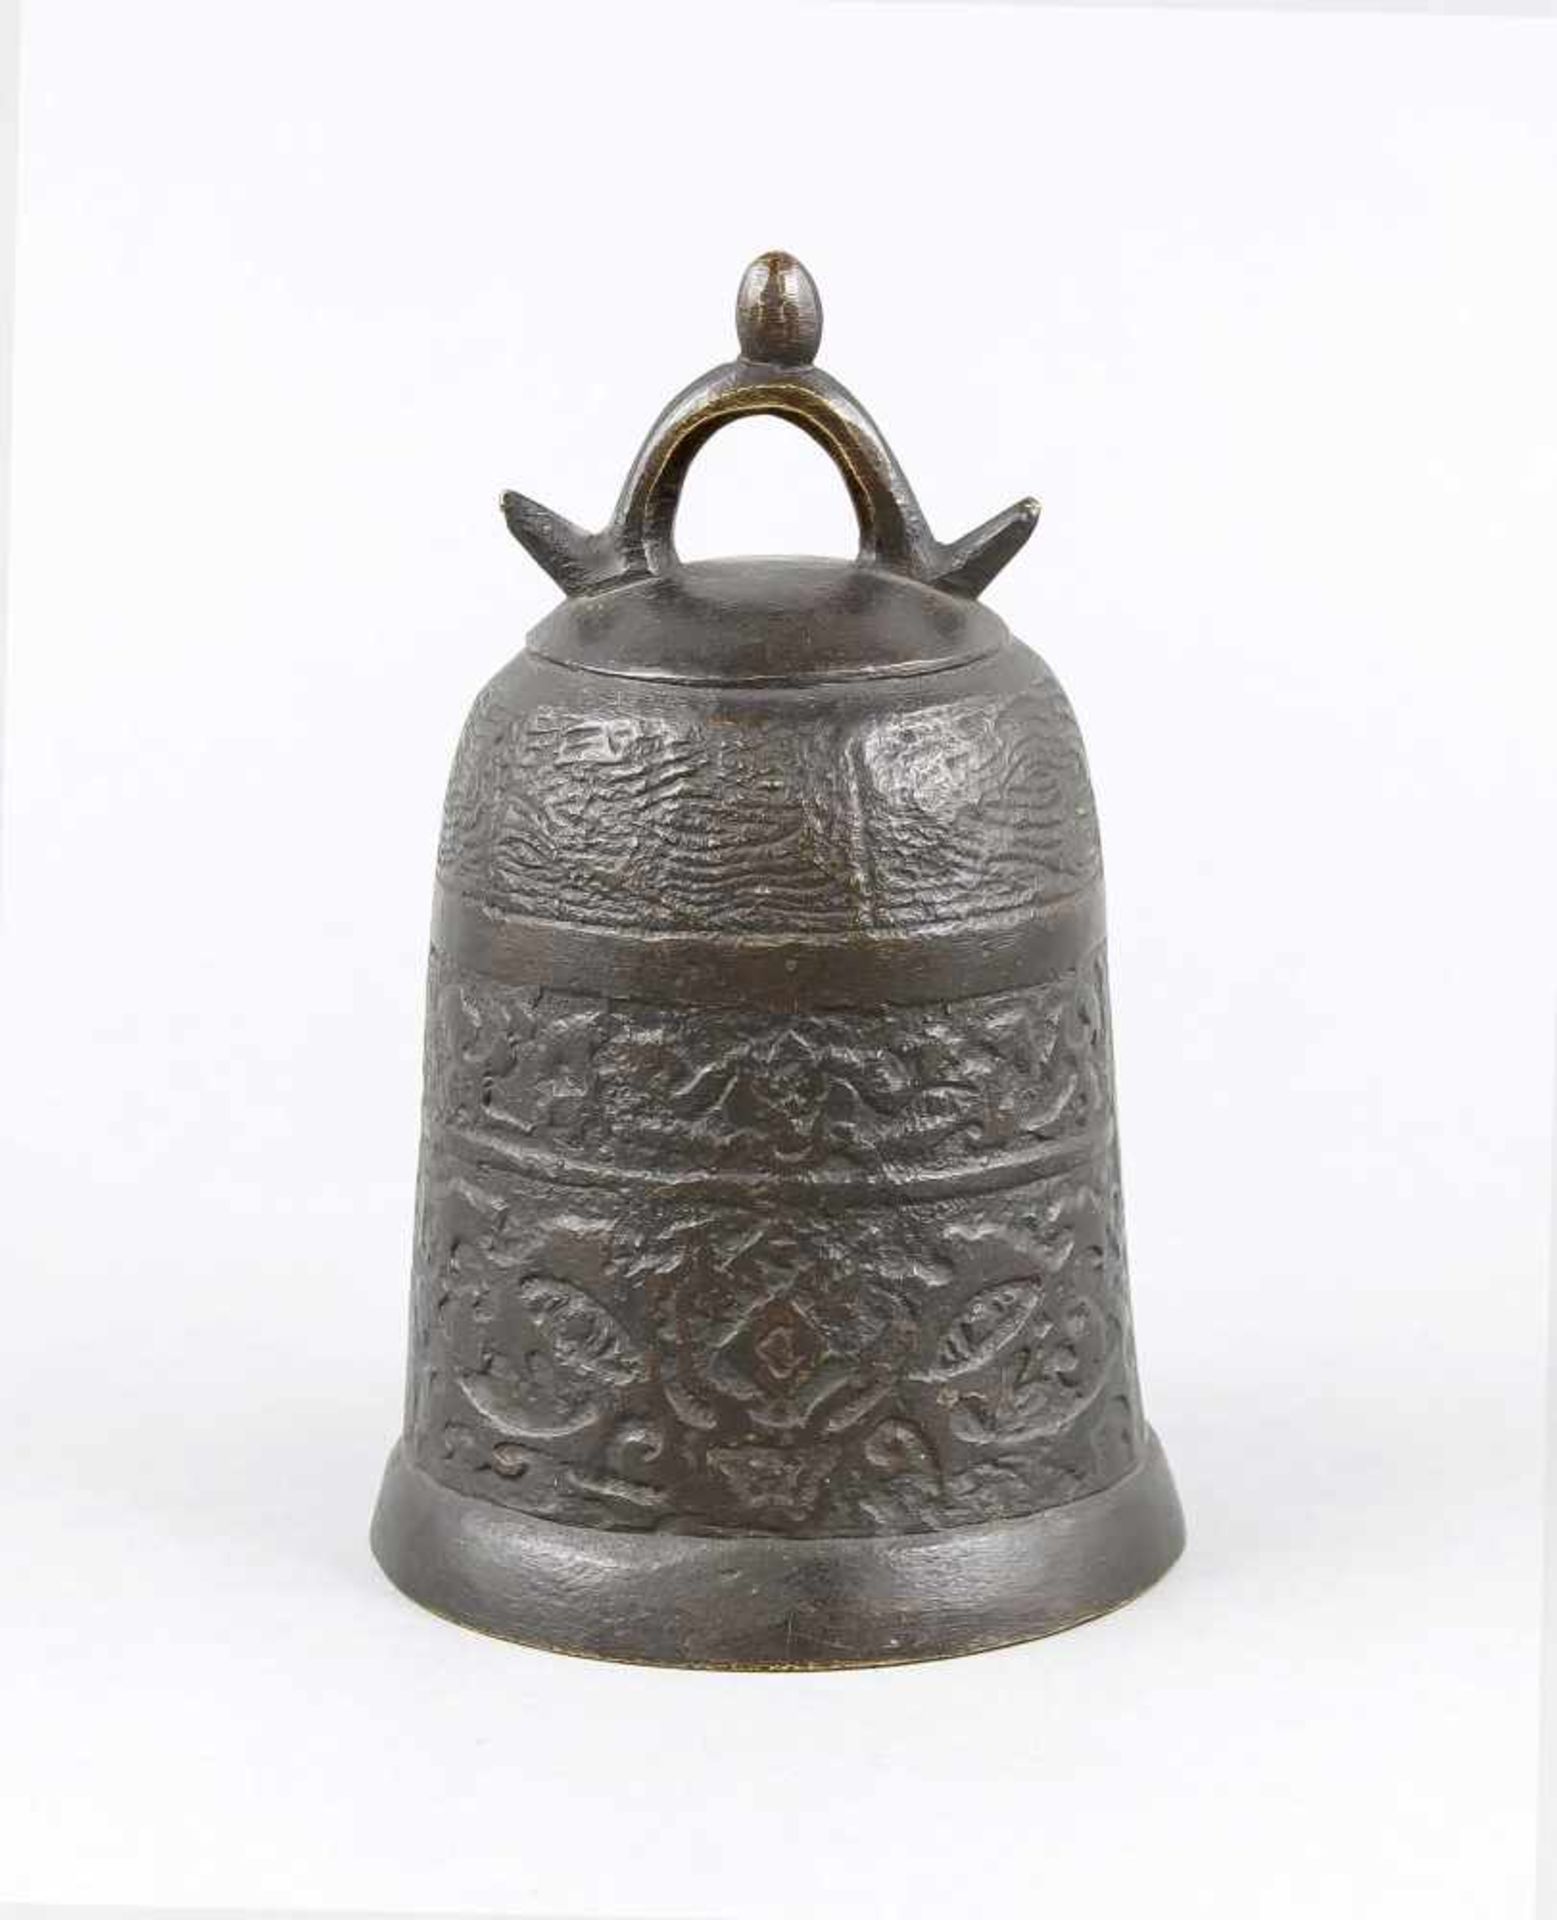 Bronze-Glocke, China, 19. Jh., Glockenkorpus unterteilt in 3 Ornamentfriese imarchaisierenden